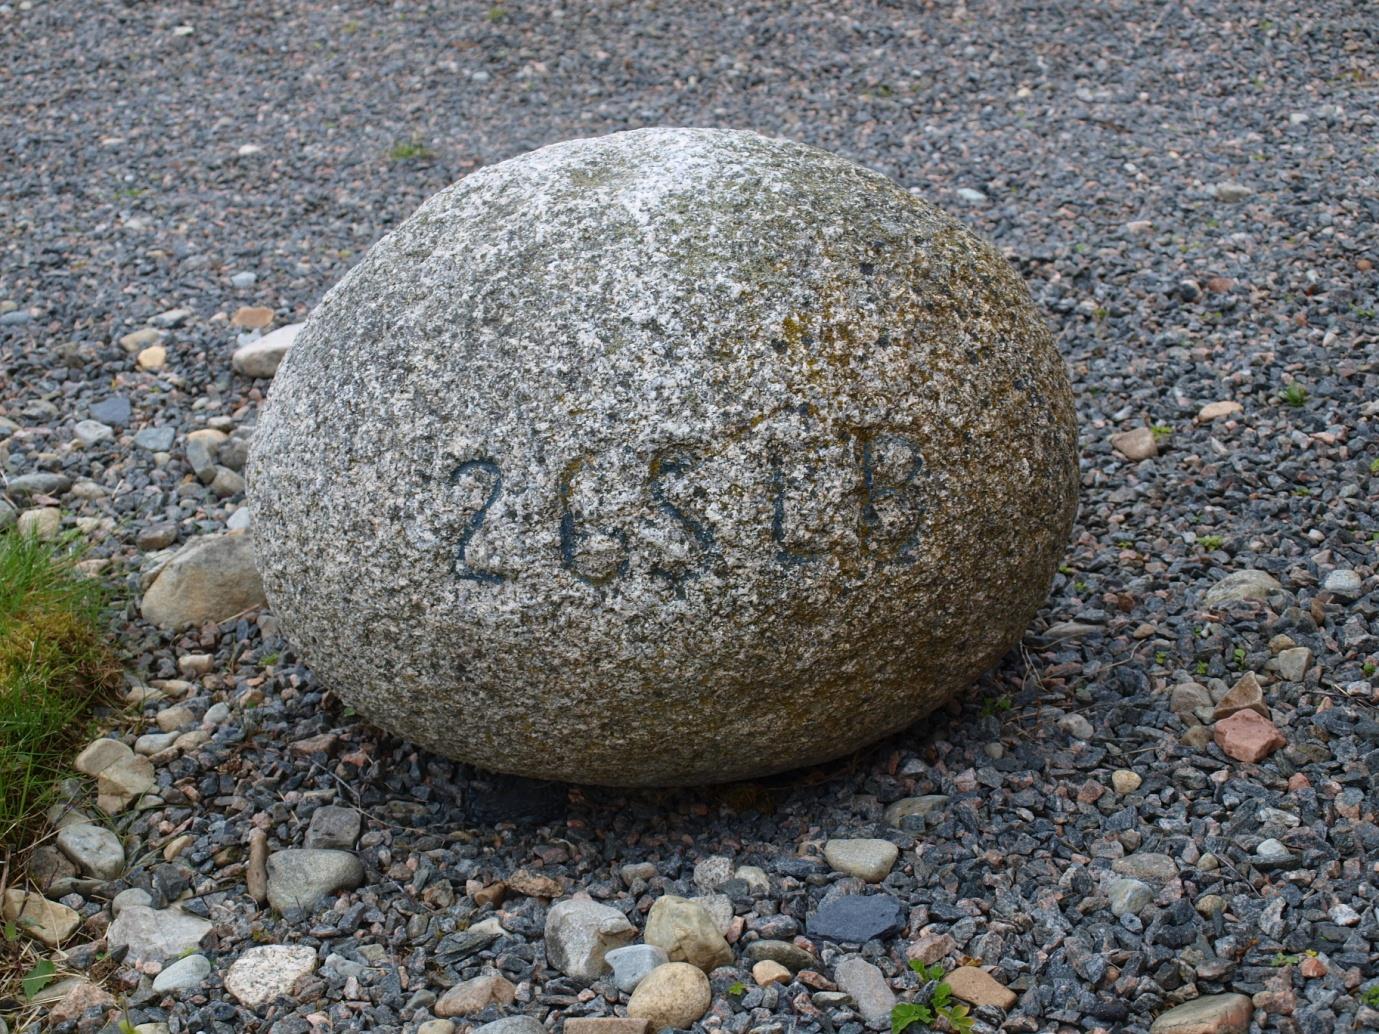 The Inver stone